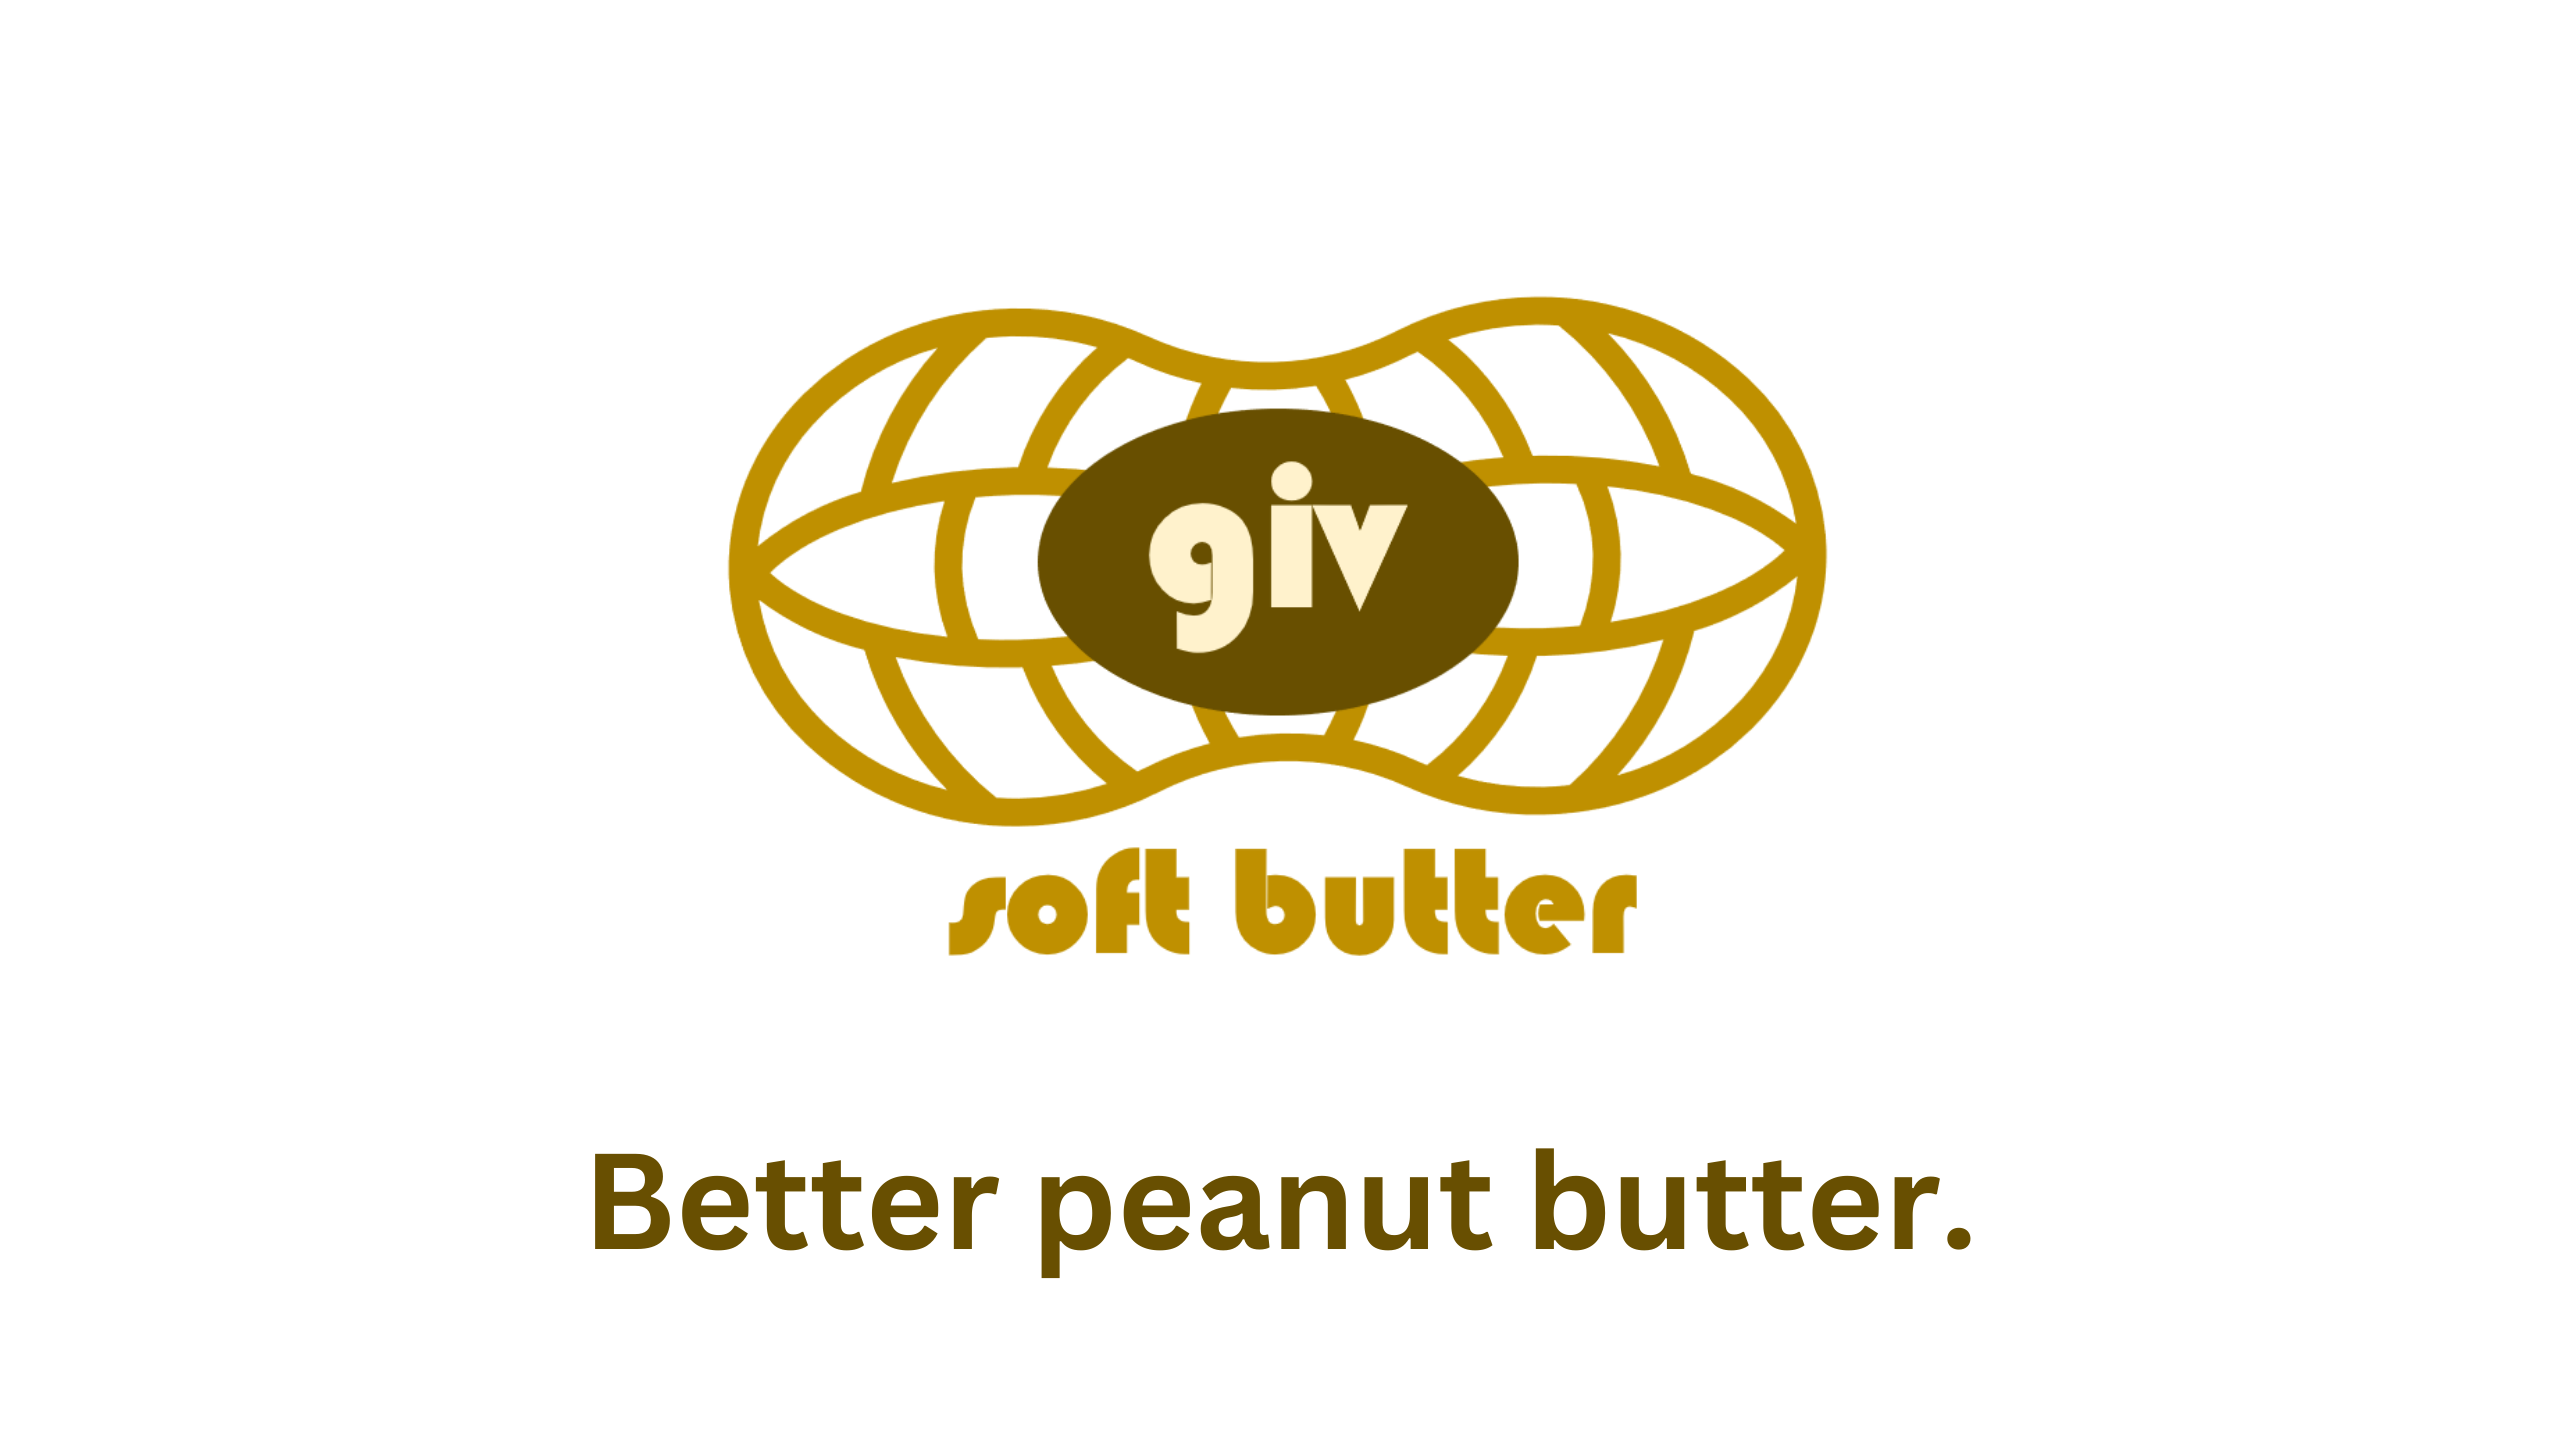 Visit Giv Soft Butter